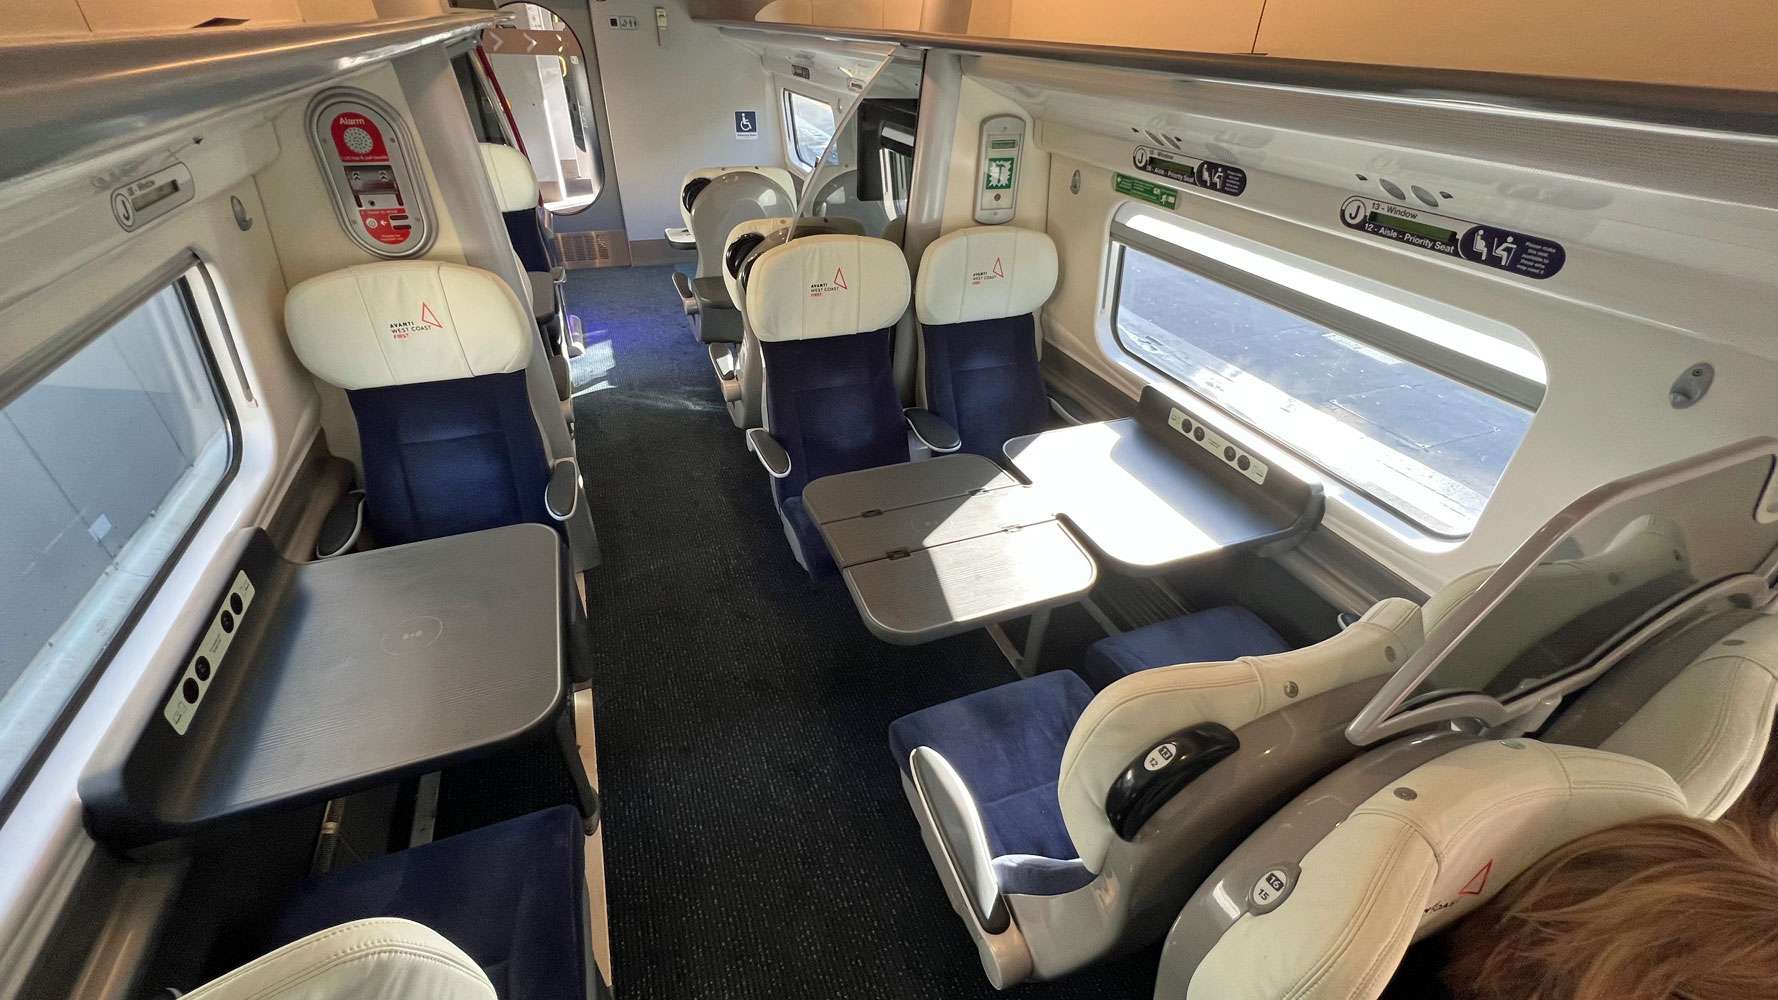 First class train travel uk